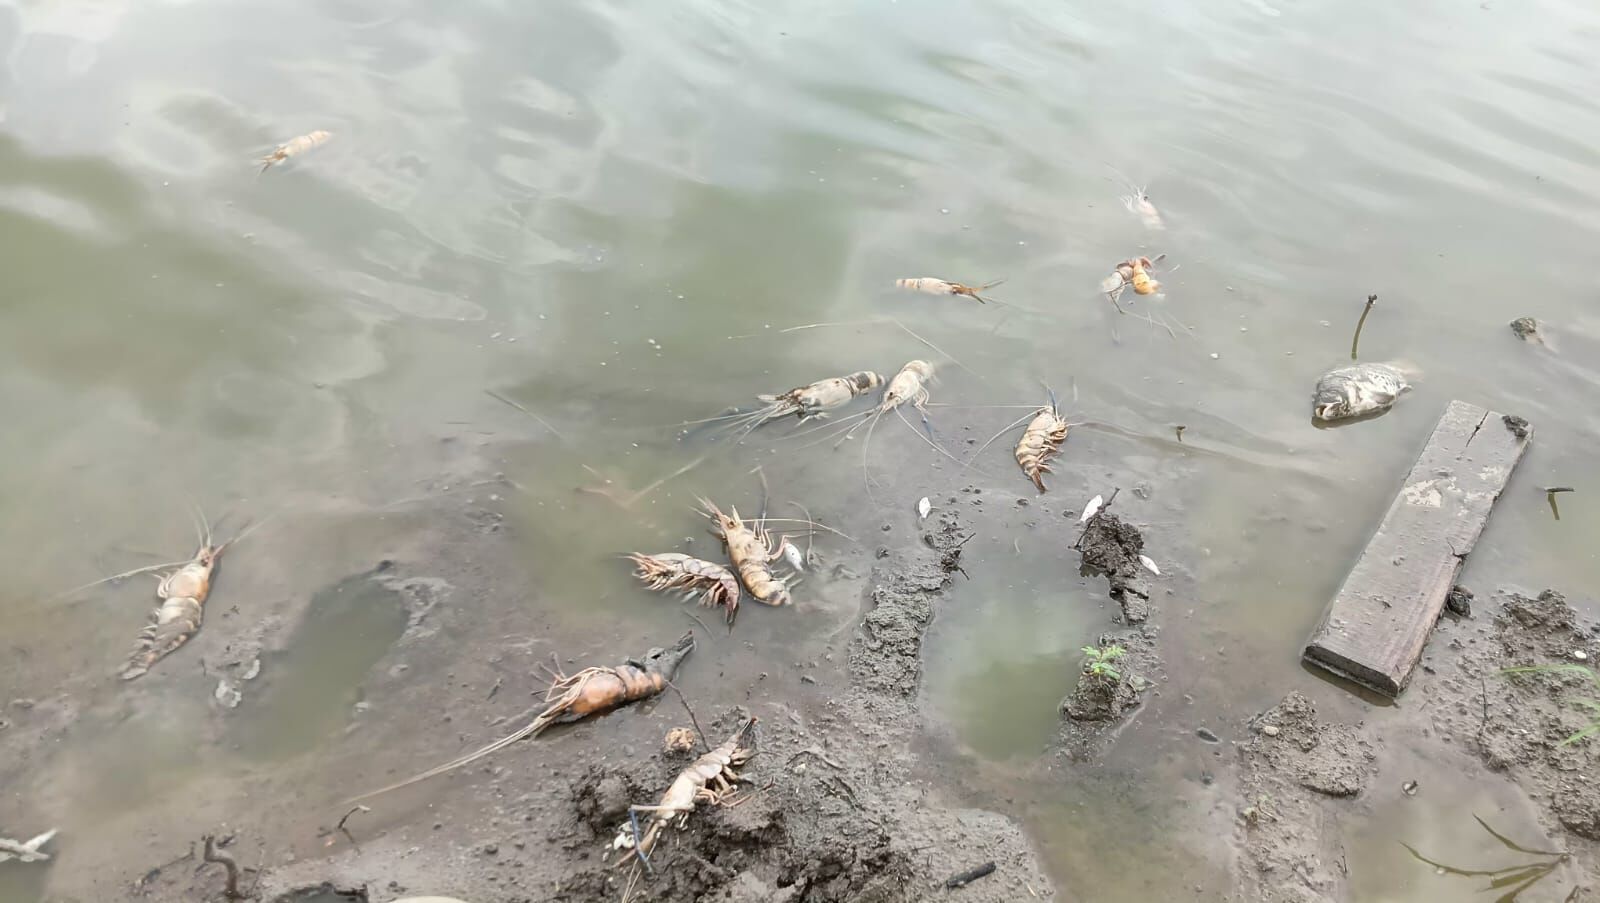 Raisen: पूरेन तालाब में सैकड़ो की तादात में झींगे और मछलियां मरी मिली, बदबू से रहवासी परेशान